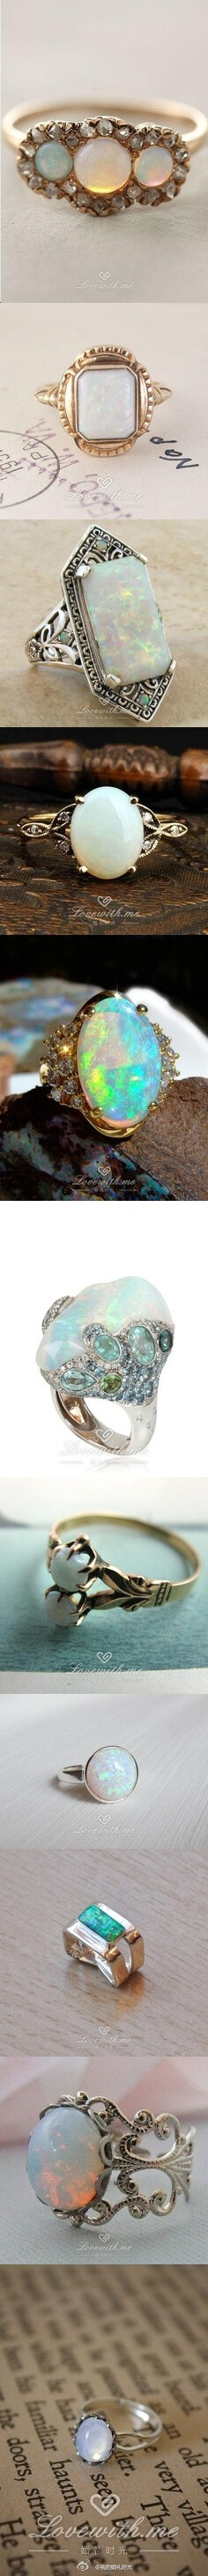 #戒指# 神秘美丽的蛋白石戒指~在长波紫外线照射下，不同种类的蛋白石发出不同颜色的荧光，如同猫眼一般闪烁。http://www.lovewith.me/share/detail/27182/all